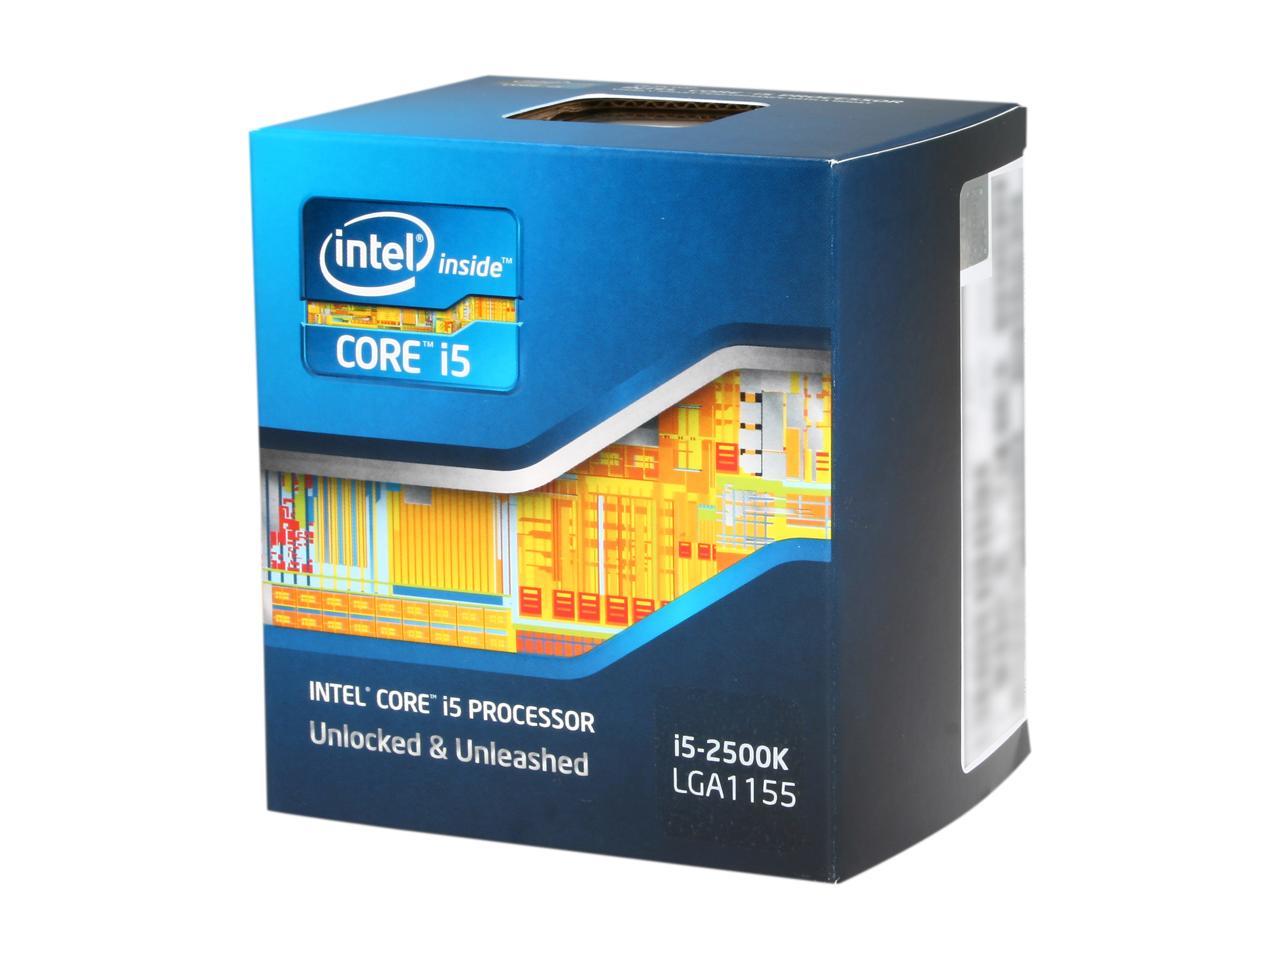 controleren plan scheepsbouw Intel Core i5-2500K 3.3GHz (3.7GHz Boost) Desktop CPU Processor -  Newegg.com - Newegg.com